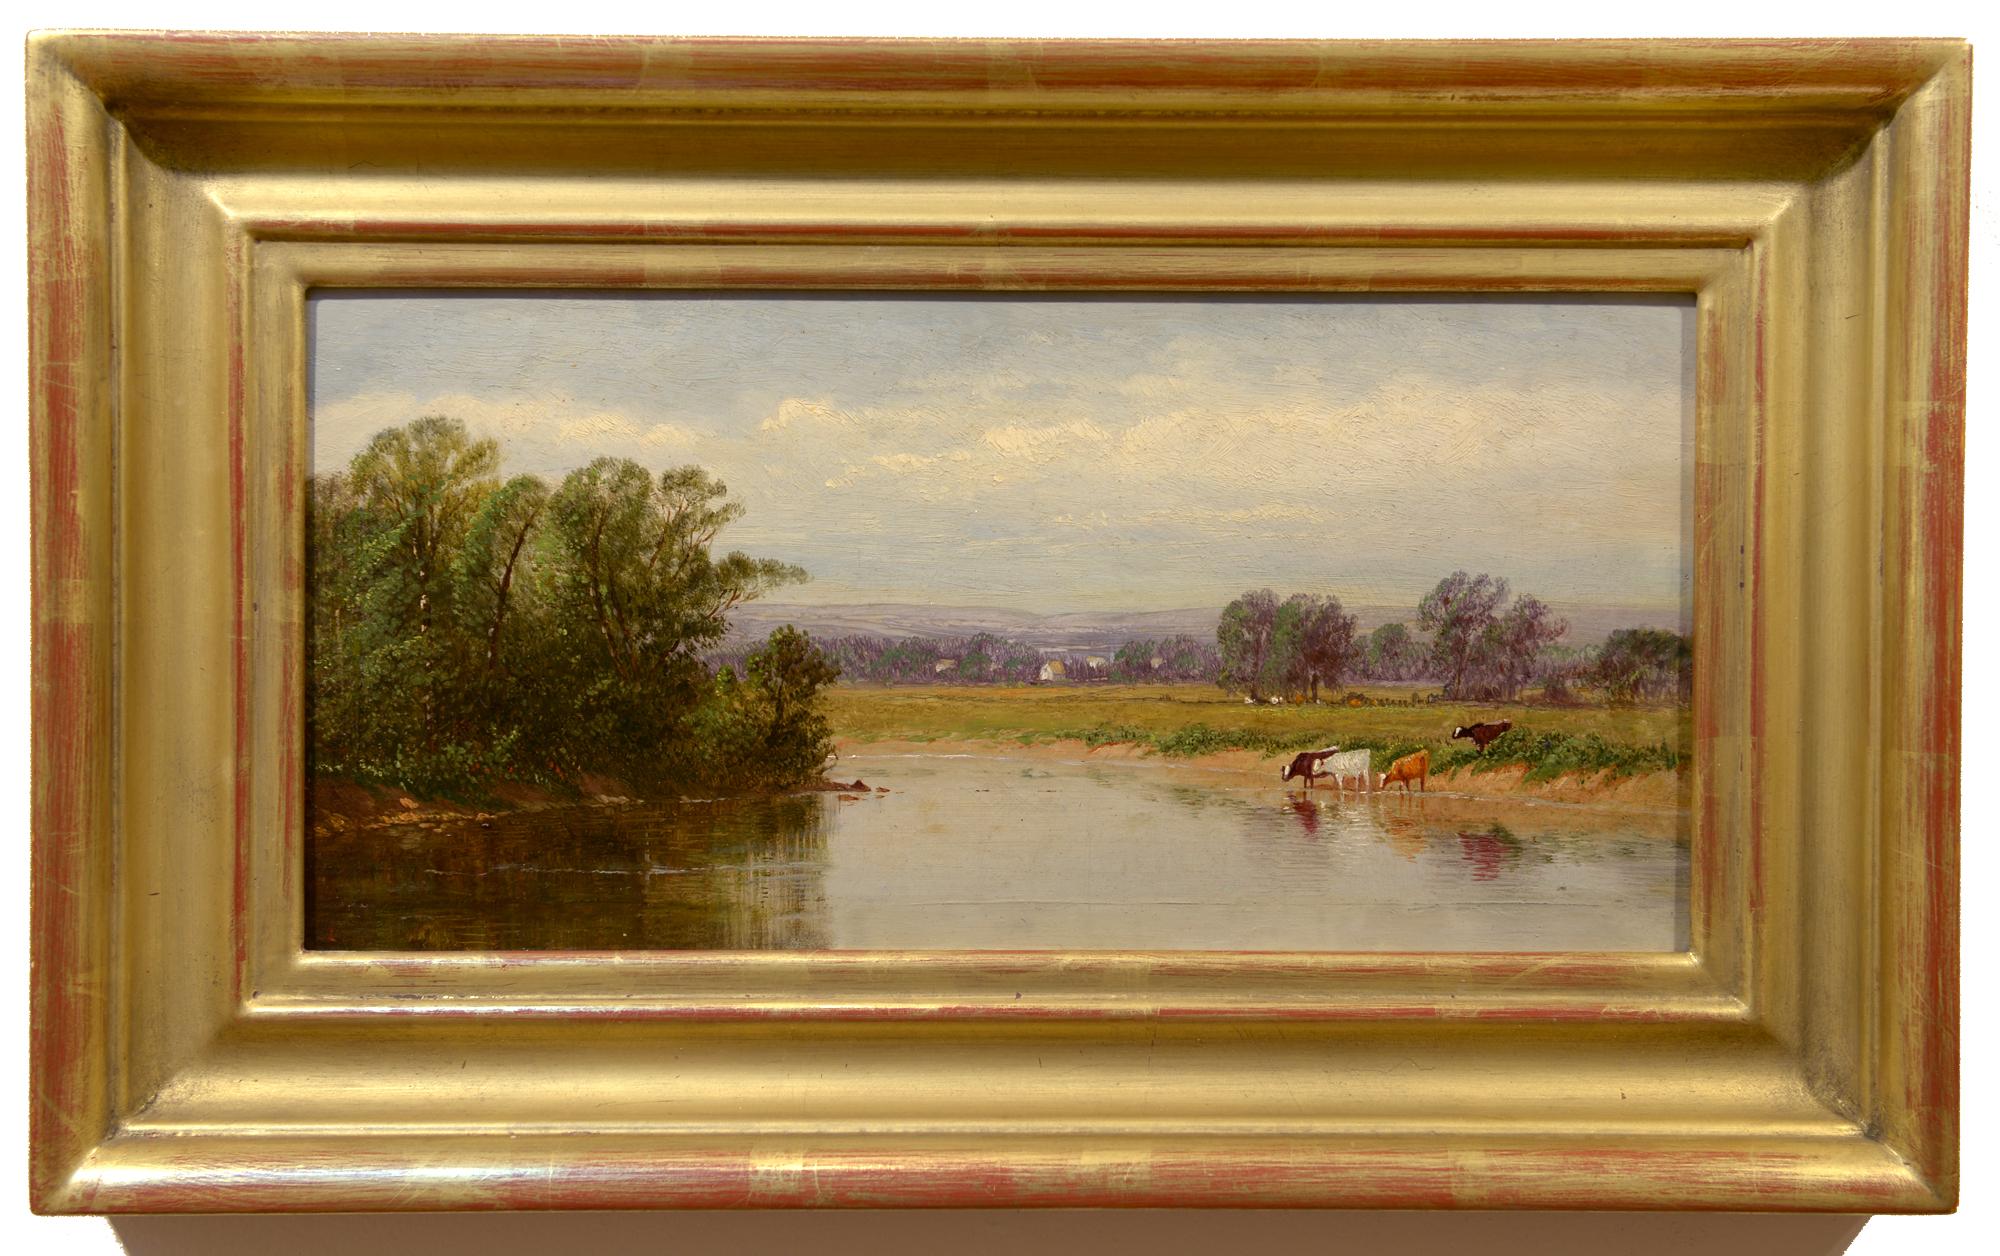 Along the River, Cattle Grazing, American Realist, huile sur panneau, paysage - Painting de Clinton Loveridge